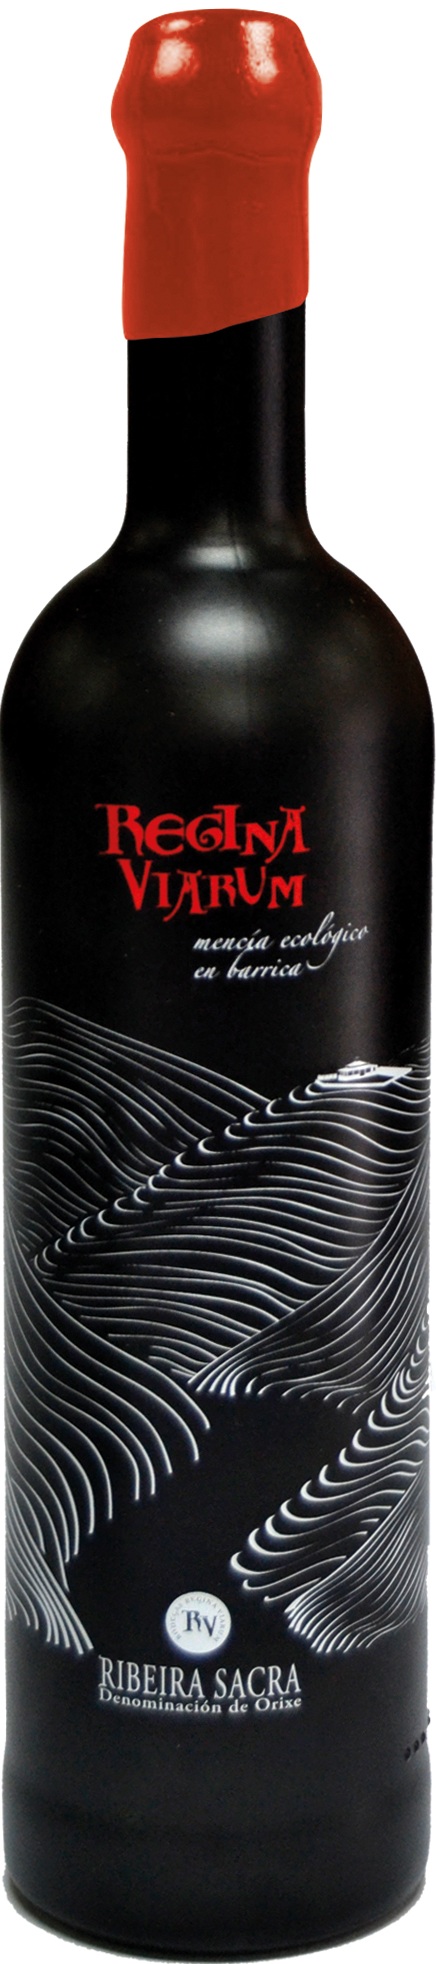 Image of Wine bottle Regina Viarum Mencía Ecológico en barrica